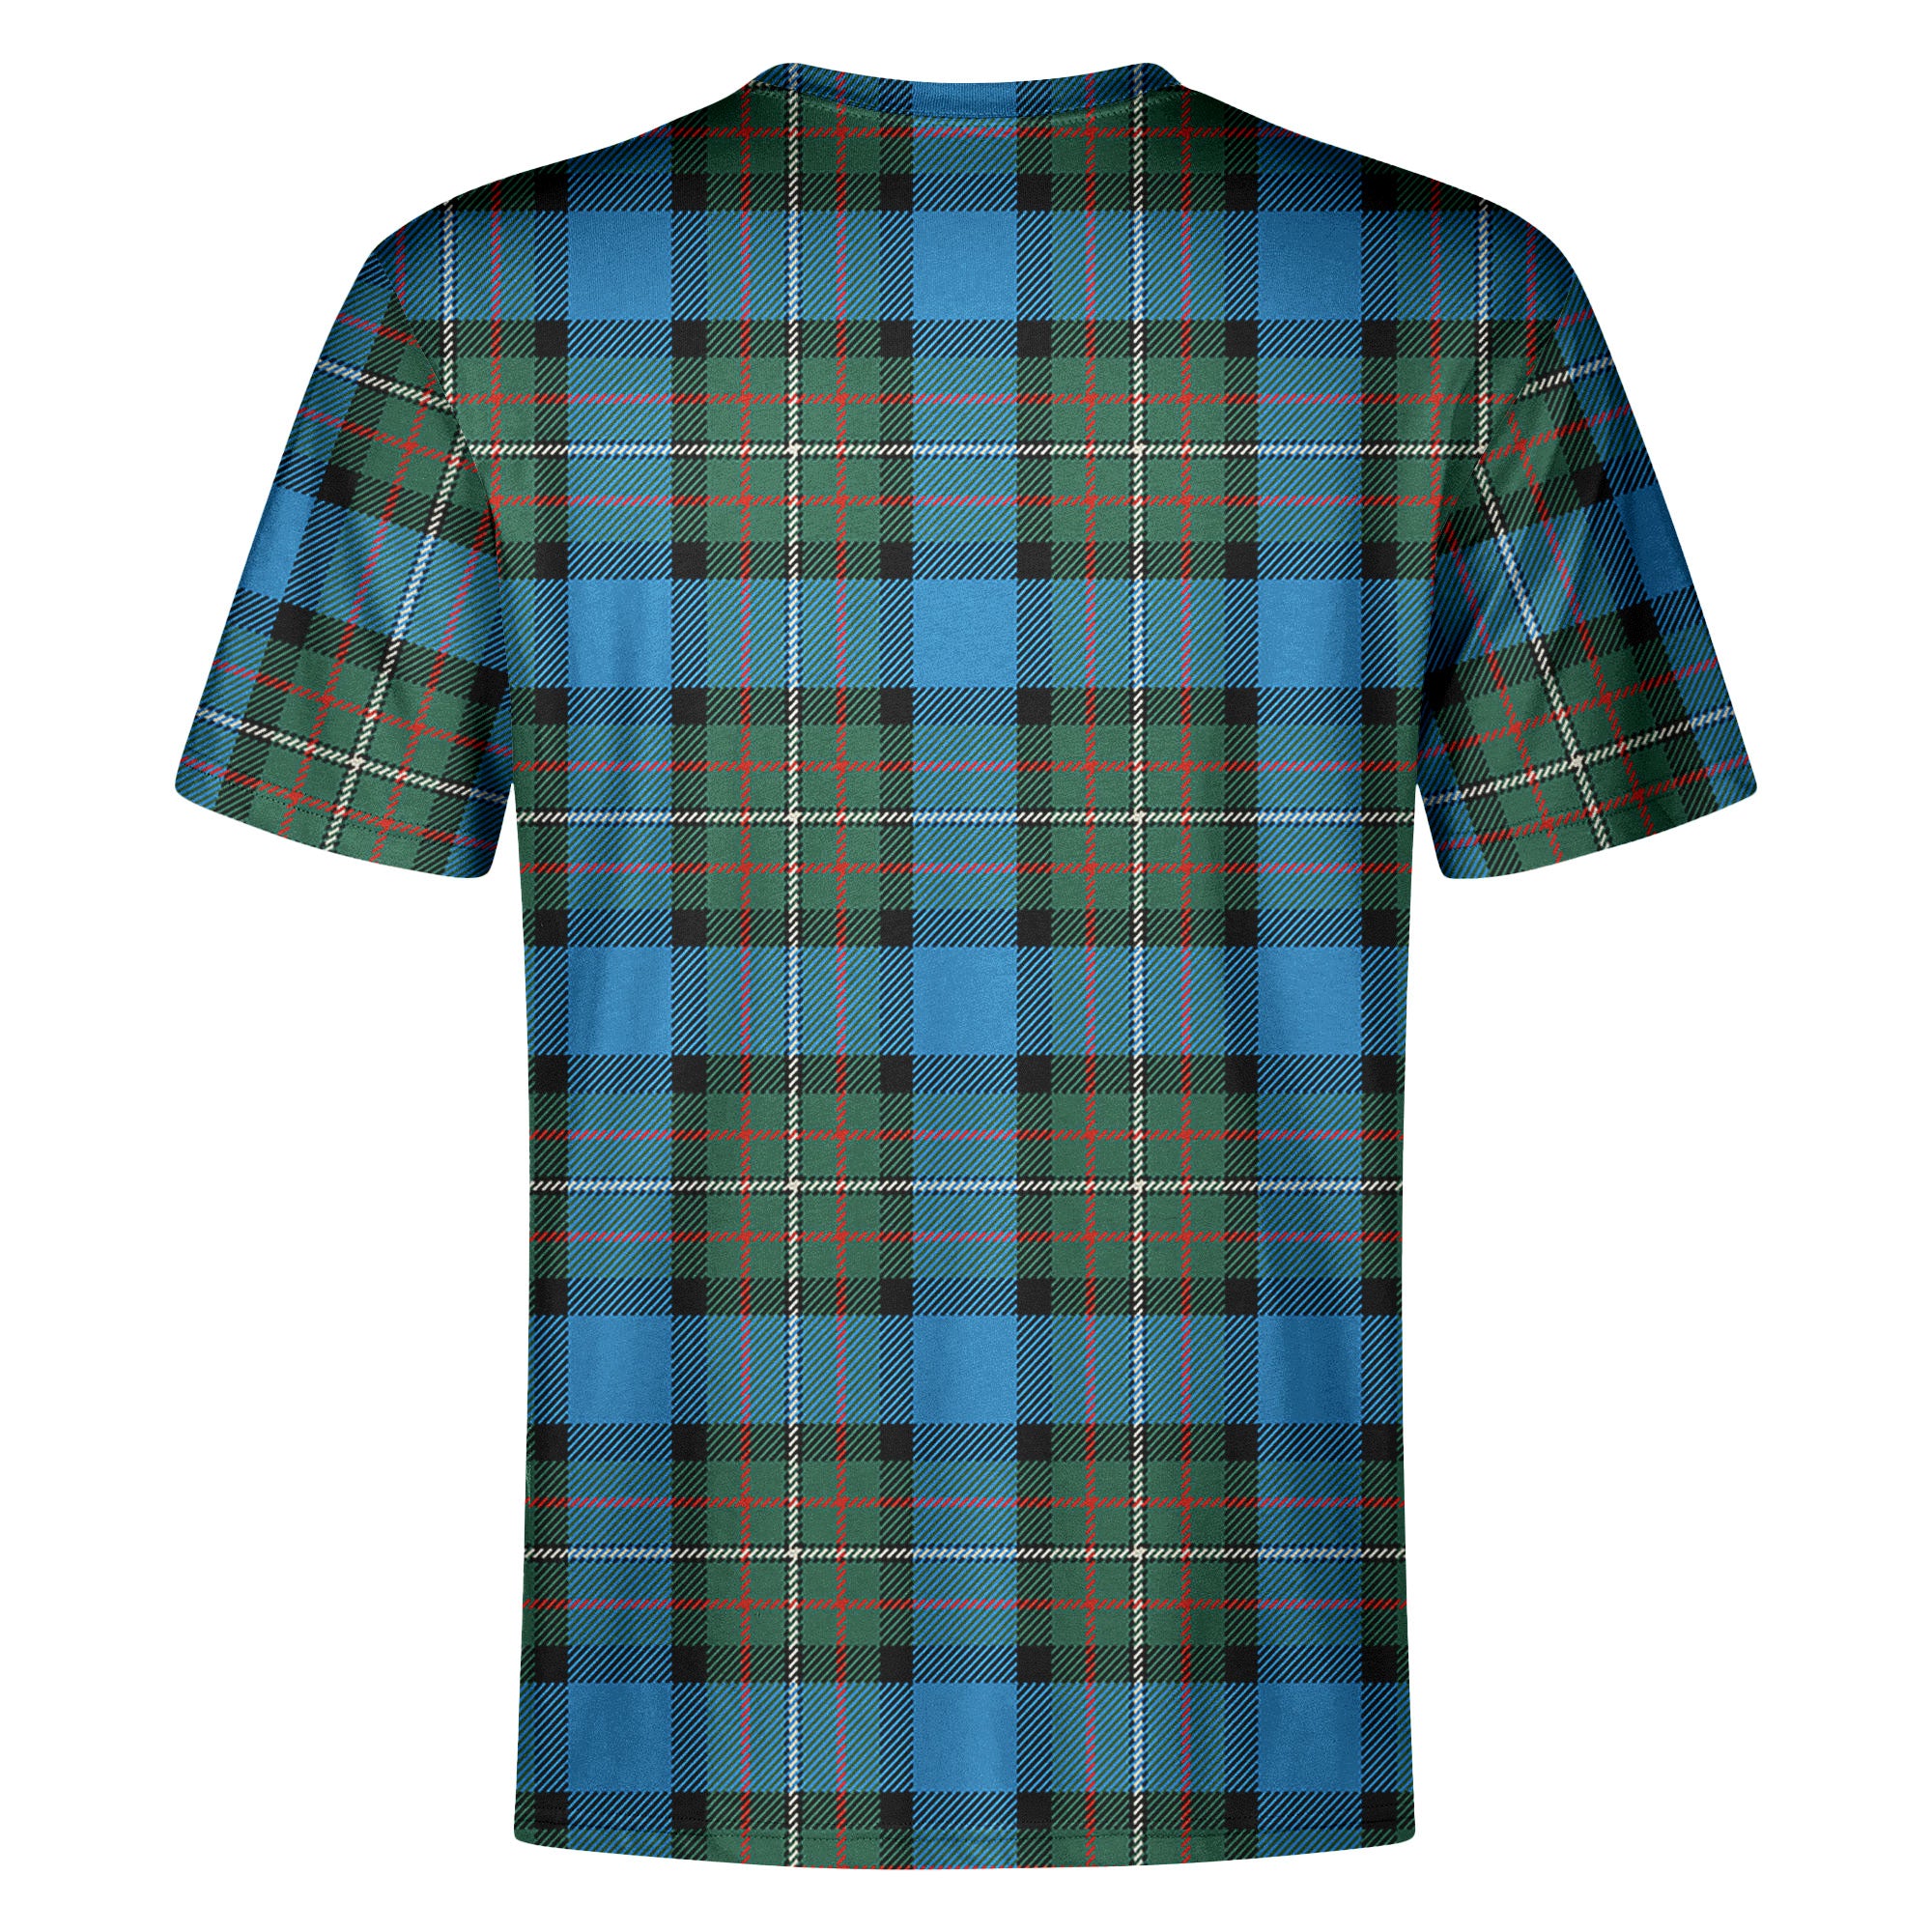 Fergusson Ancient Tartan Crest T-shirt